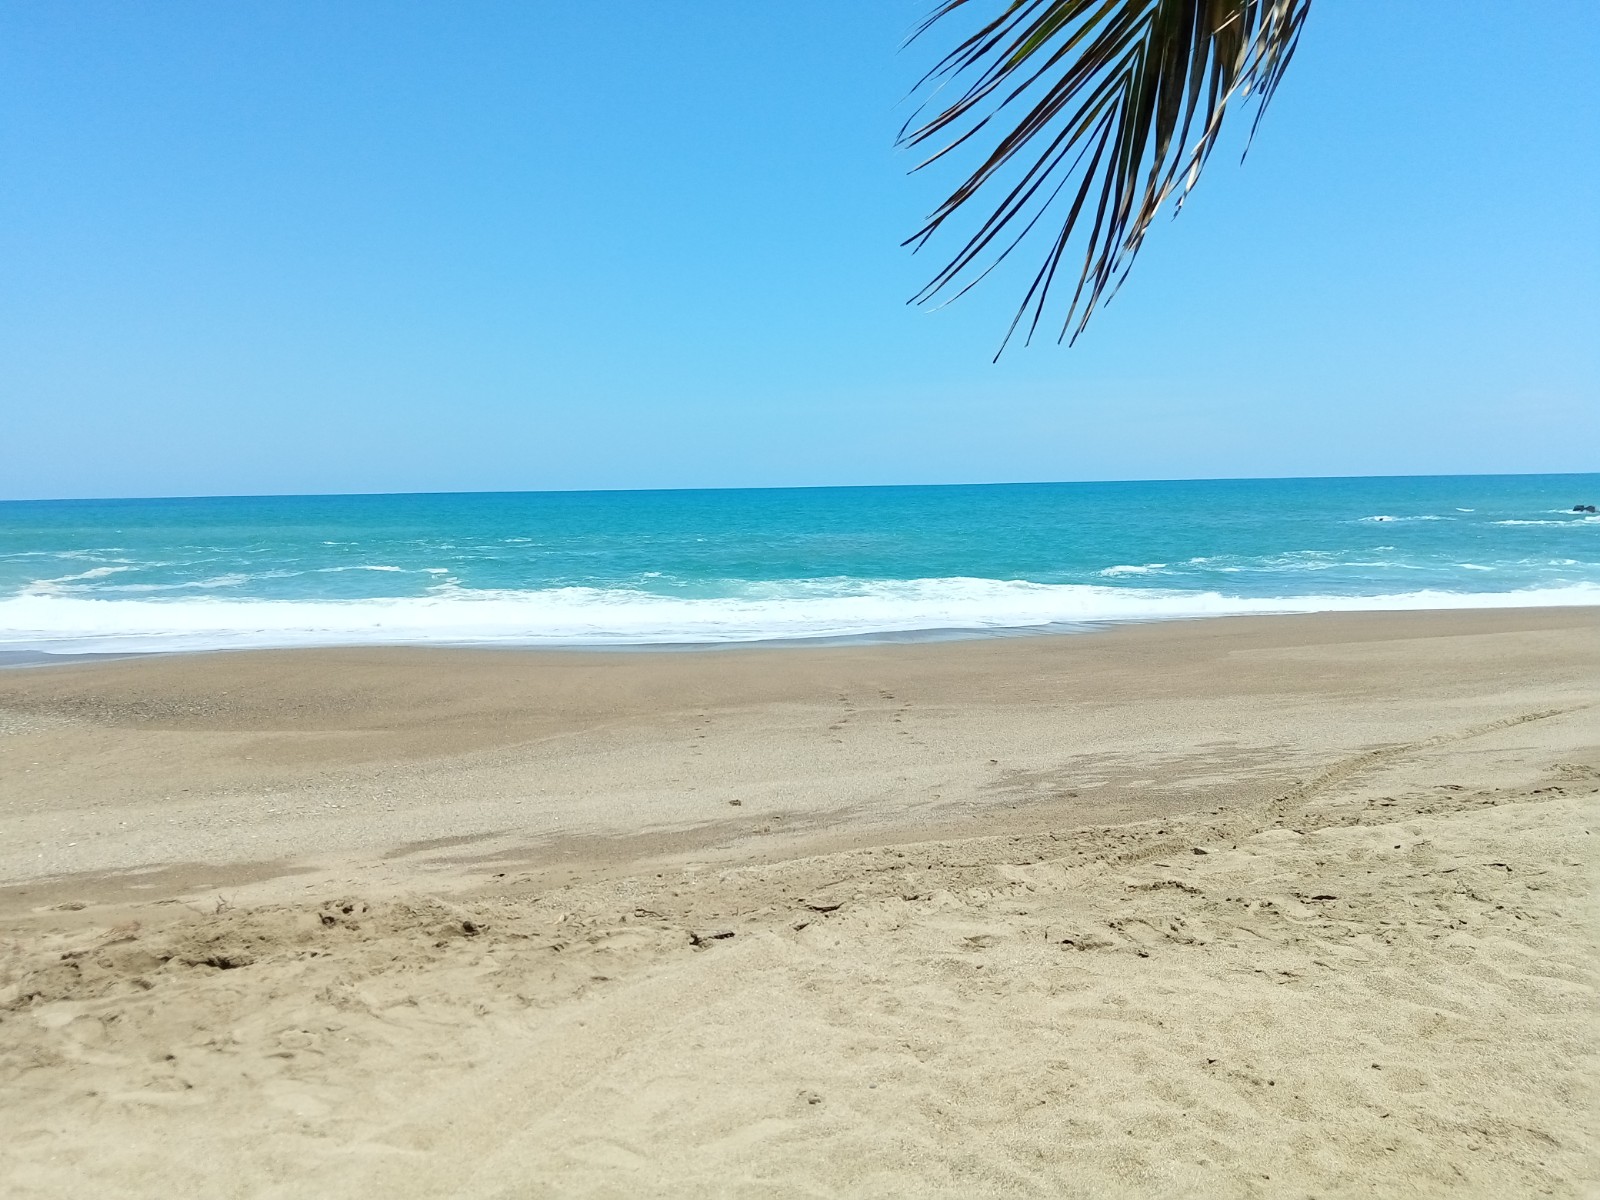 Playa Rangel'in fotoğrafı geniş plaj ile birlikte